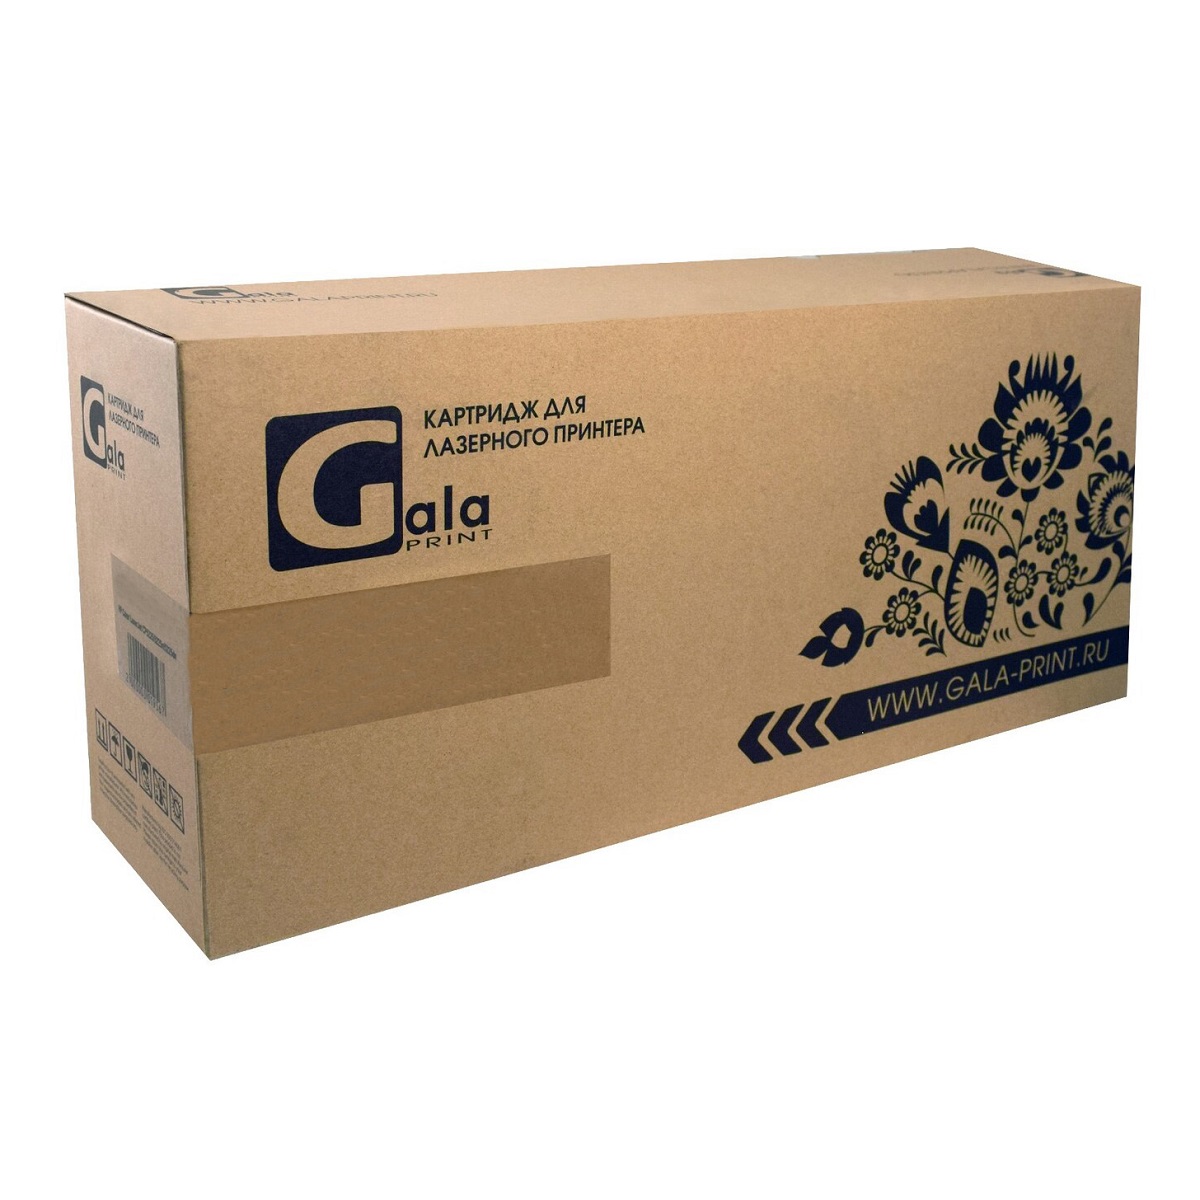 Картридж лазерный GalaPrint GP-Q7516A/509 (№16A/Q7516A), черный, 12000 страниц, совместимый, для LJ 5200/5200L/5200dtn/5200tn/Canon 3500/3900/3950/3970